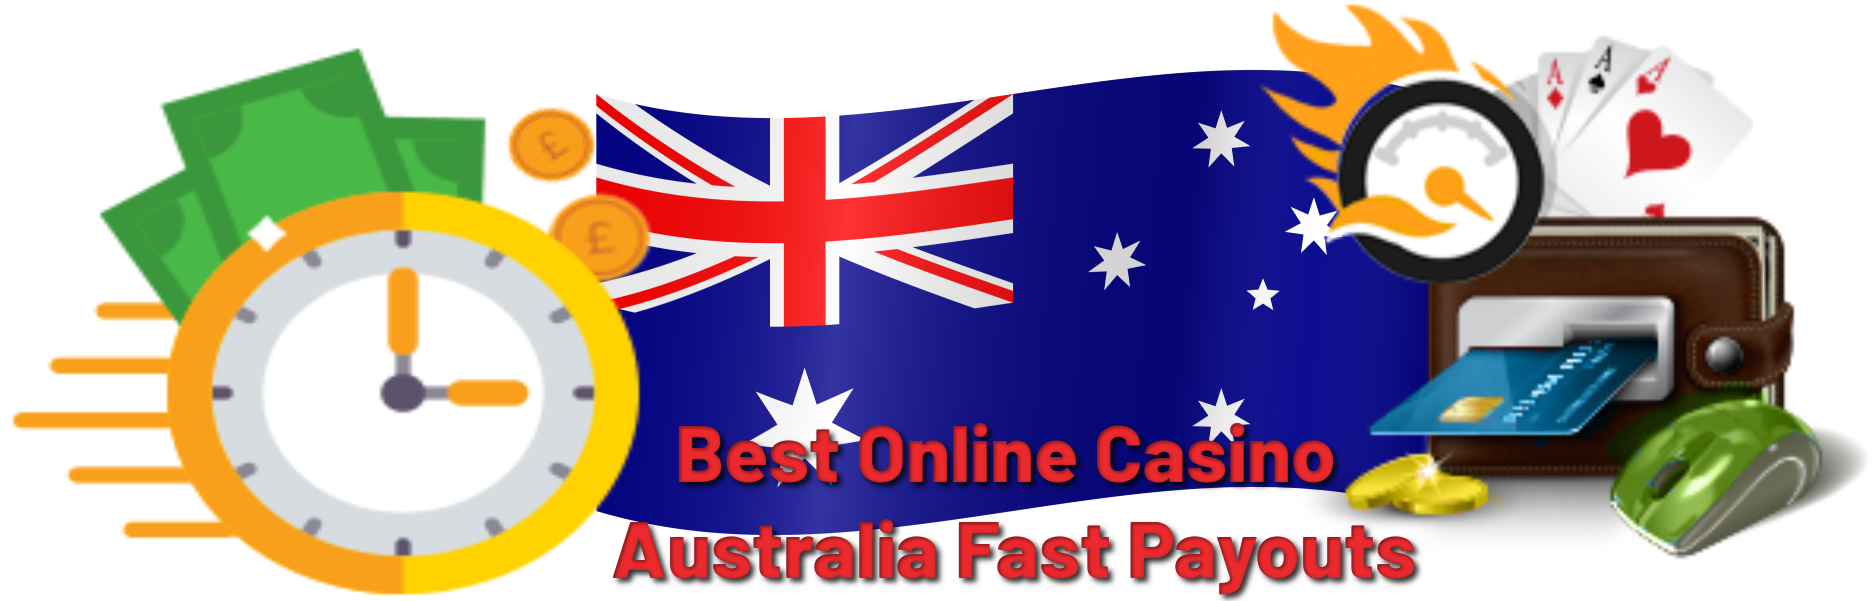 Online Casino Australia Legal